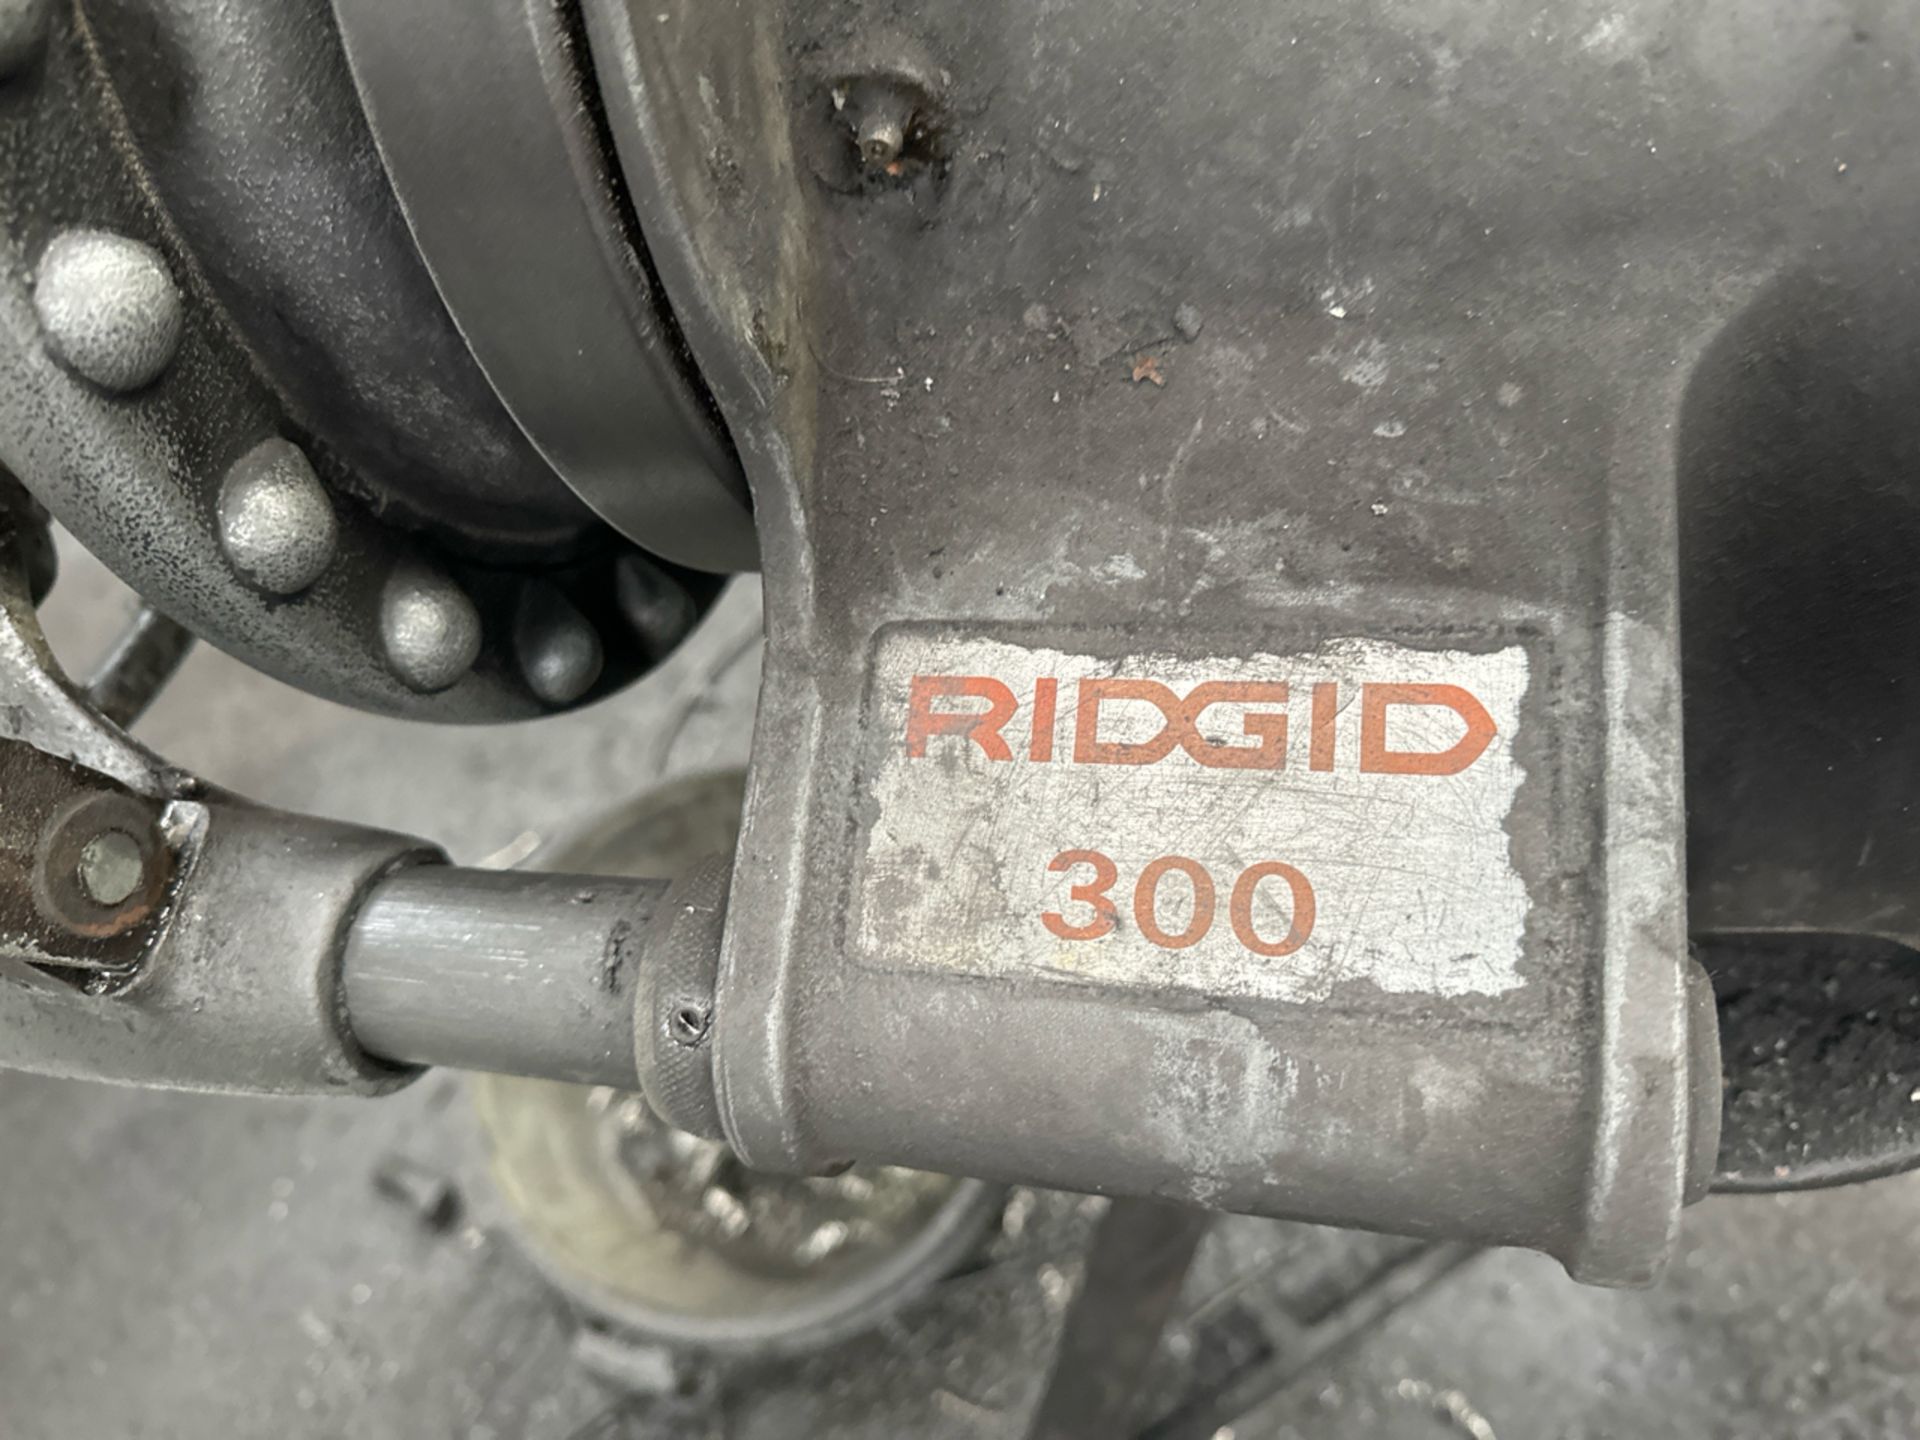 Rigid 300 Pipe Threading Machine - Image 3 of 5